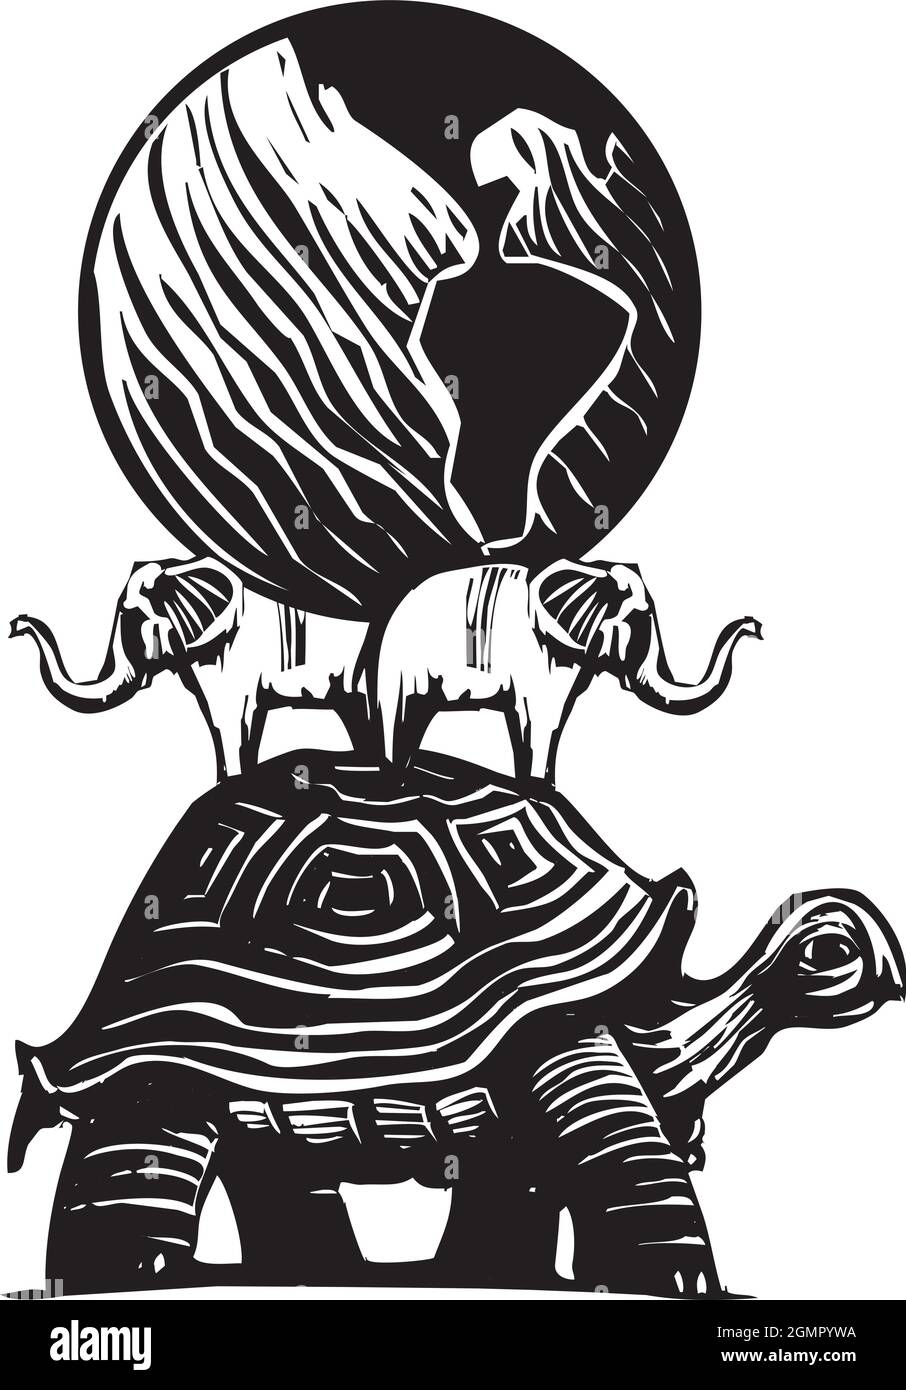 Ilustración de estilo expresionista de corte en madera de un globo de la tierra que monta en la parte posterior de una tortuga y elefantes Ilustración del Vector